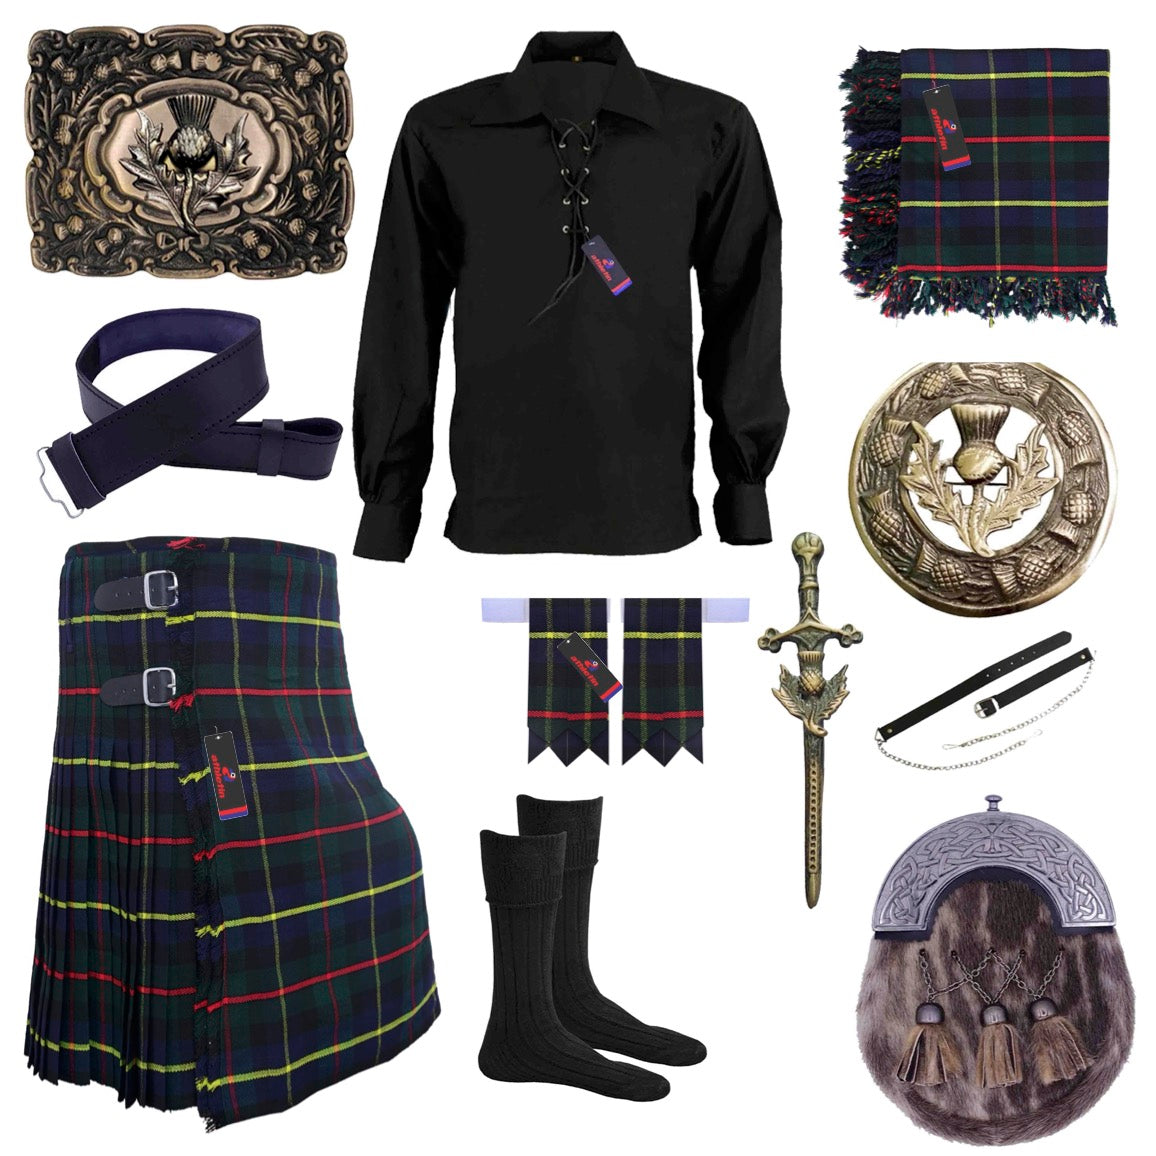 Scottish Highland Kilt Macleod of Harris Outfit Scottish Thistle Set - Athletin